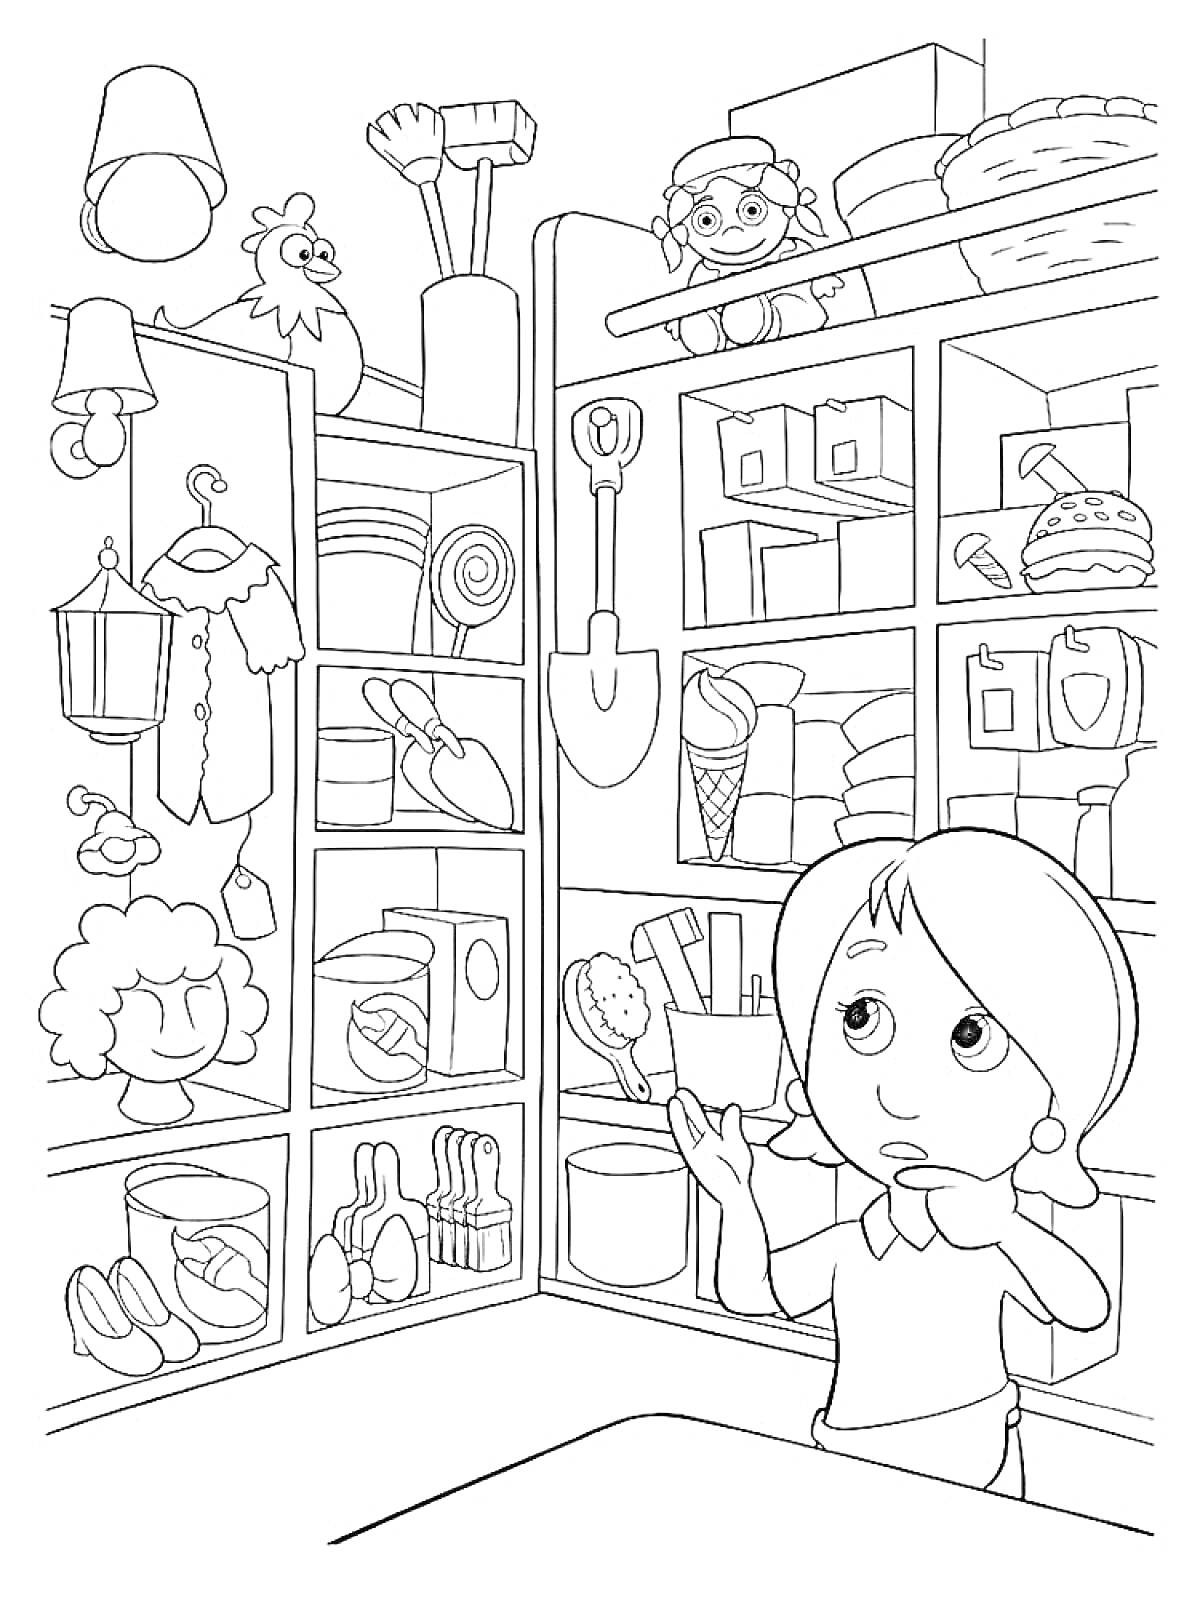 Девочка в магазине игрушек с полками, полными игрушек, включая куклы, мяч, машинки, мягкие игрушки и другие предметы